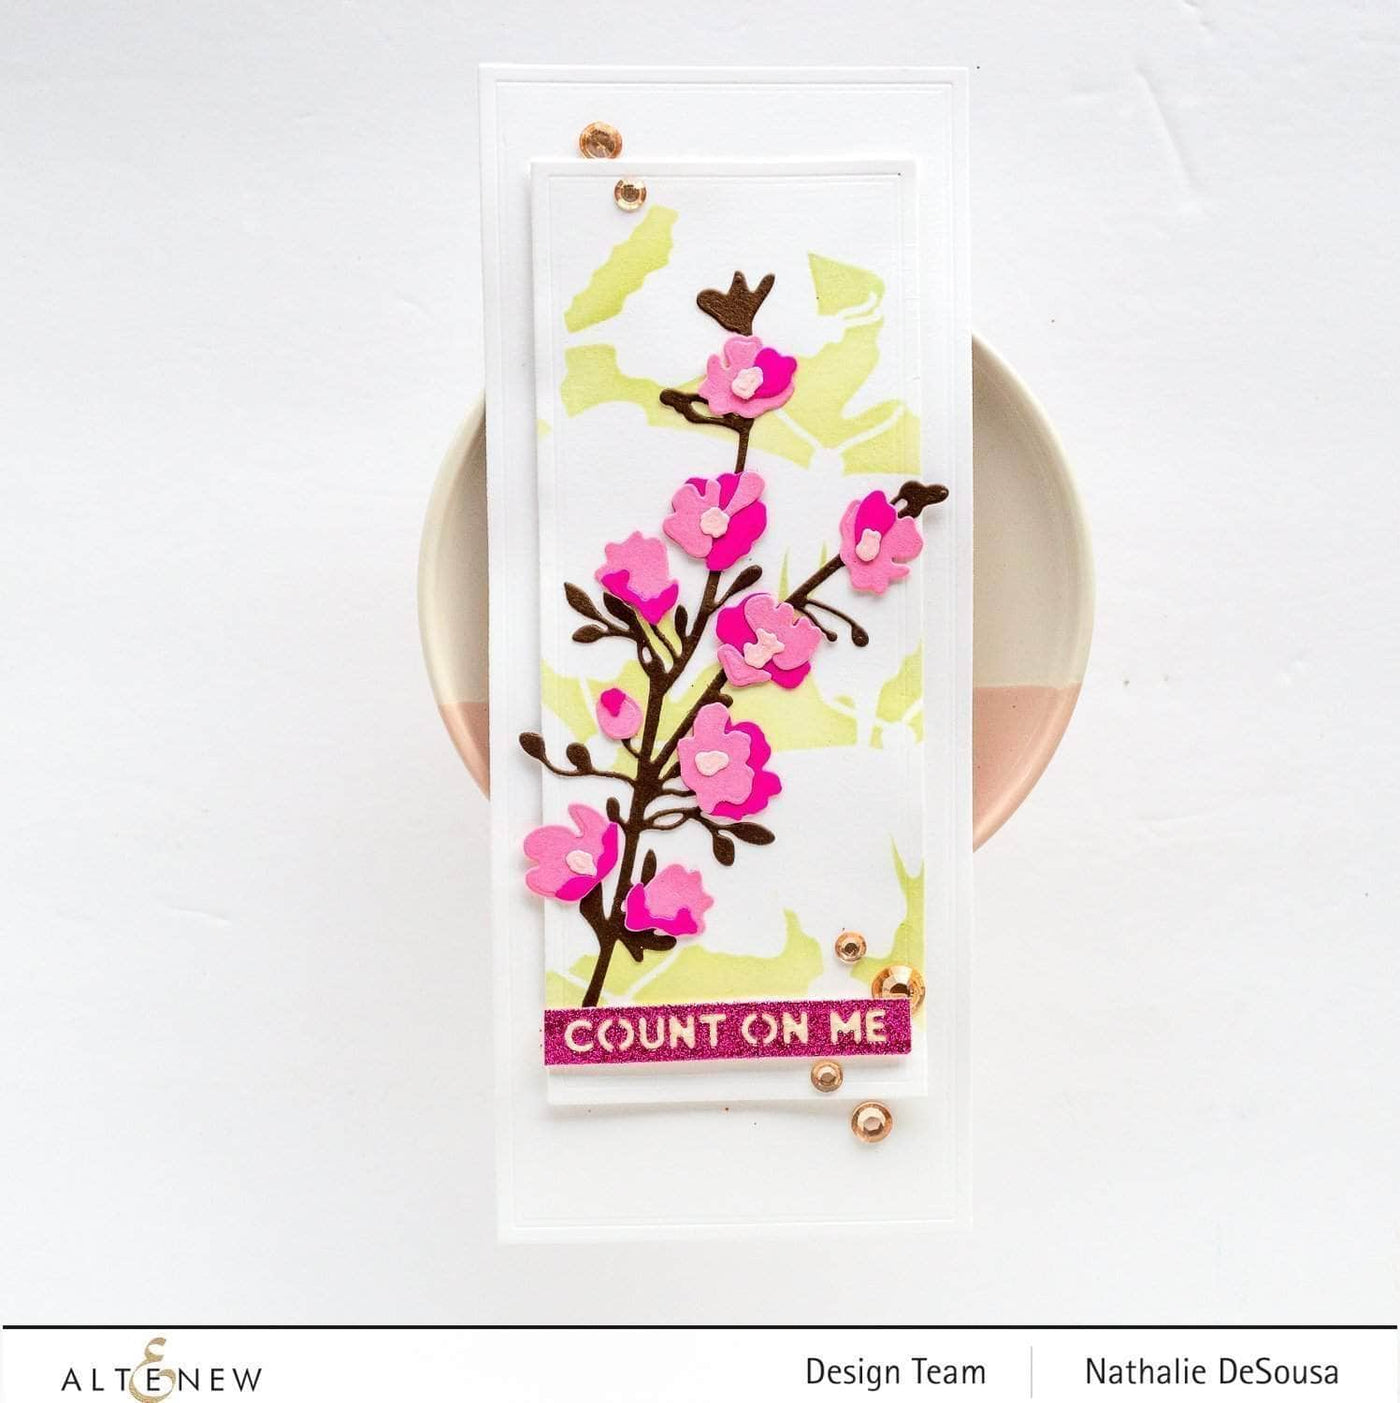 Die & Paper Bundle Itty Bitty Flowers Die Set & Gradient Cardstock Bundle